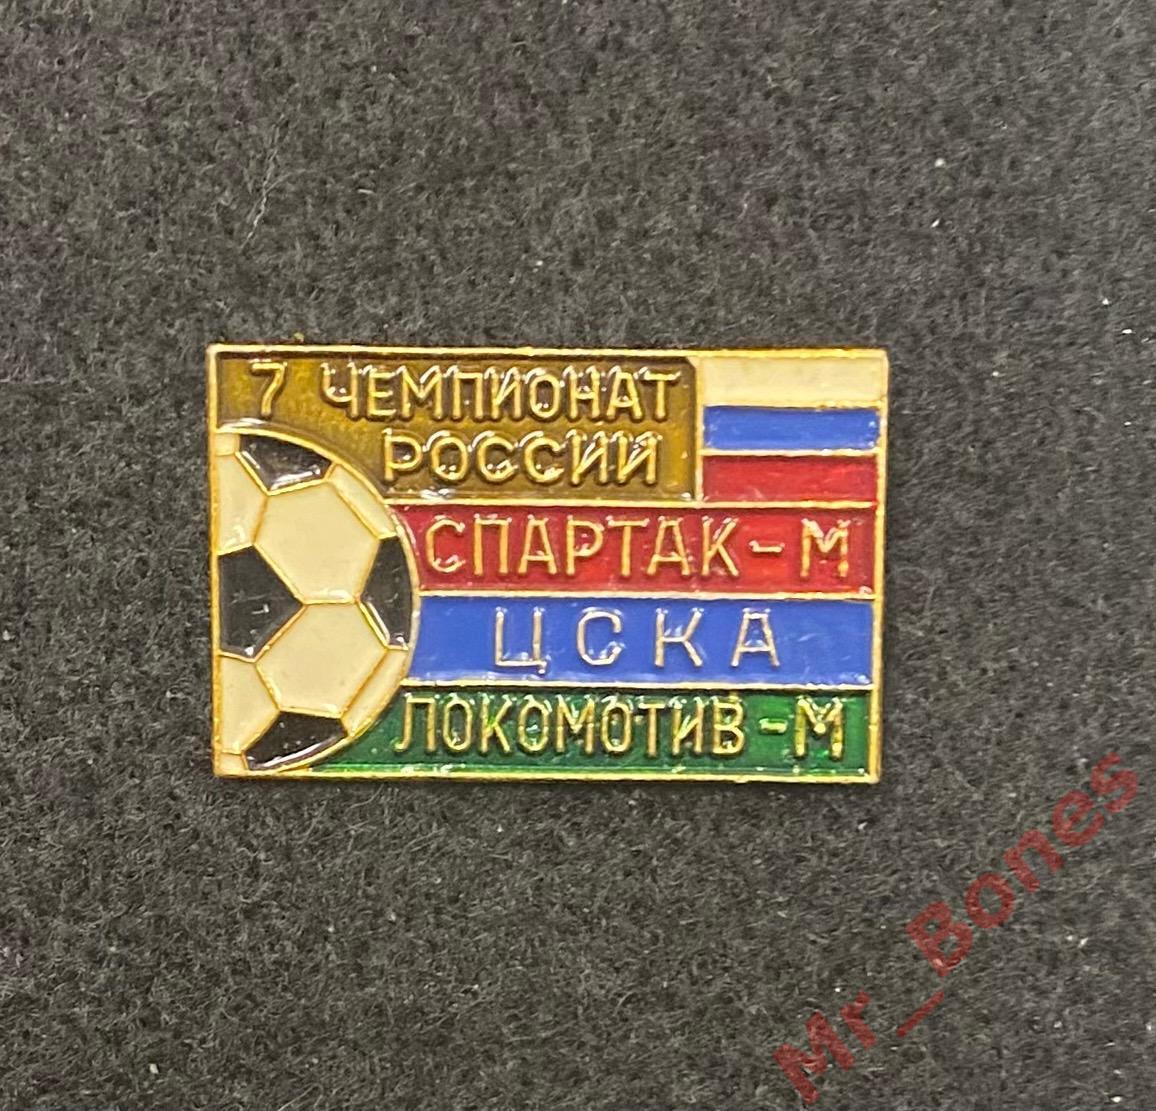 Спартак, ЦСКА, Локомотив - призеры 7 чемпионата России (1998 г.)